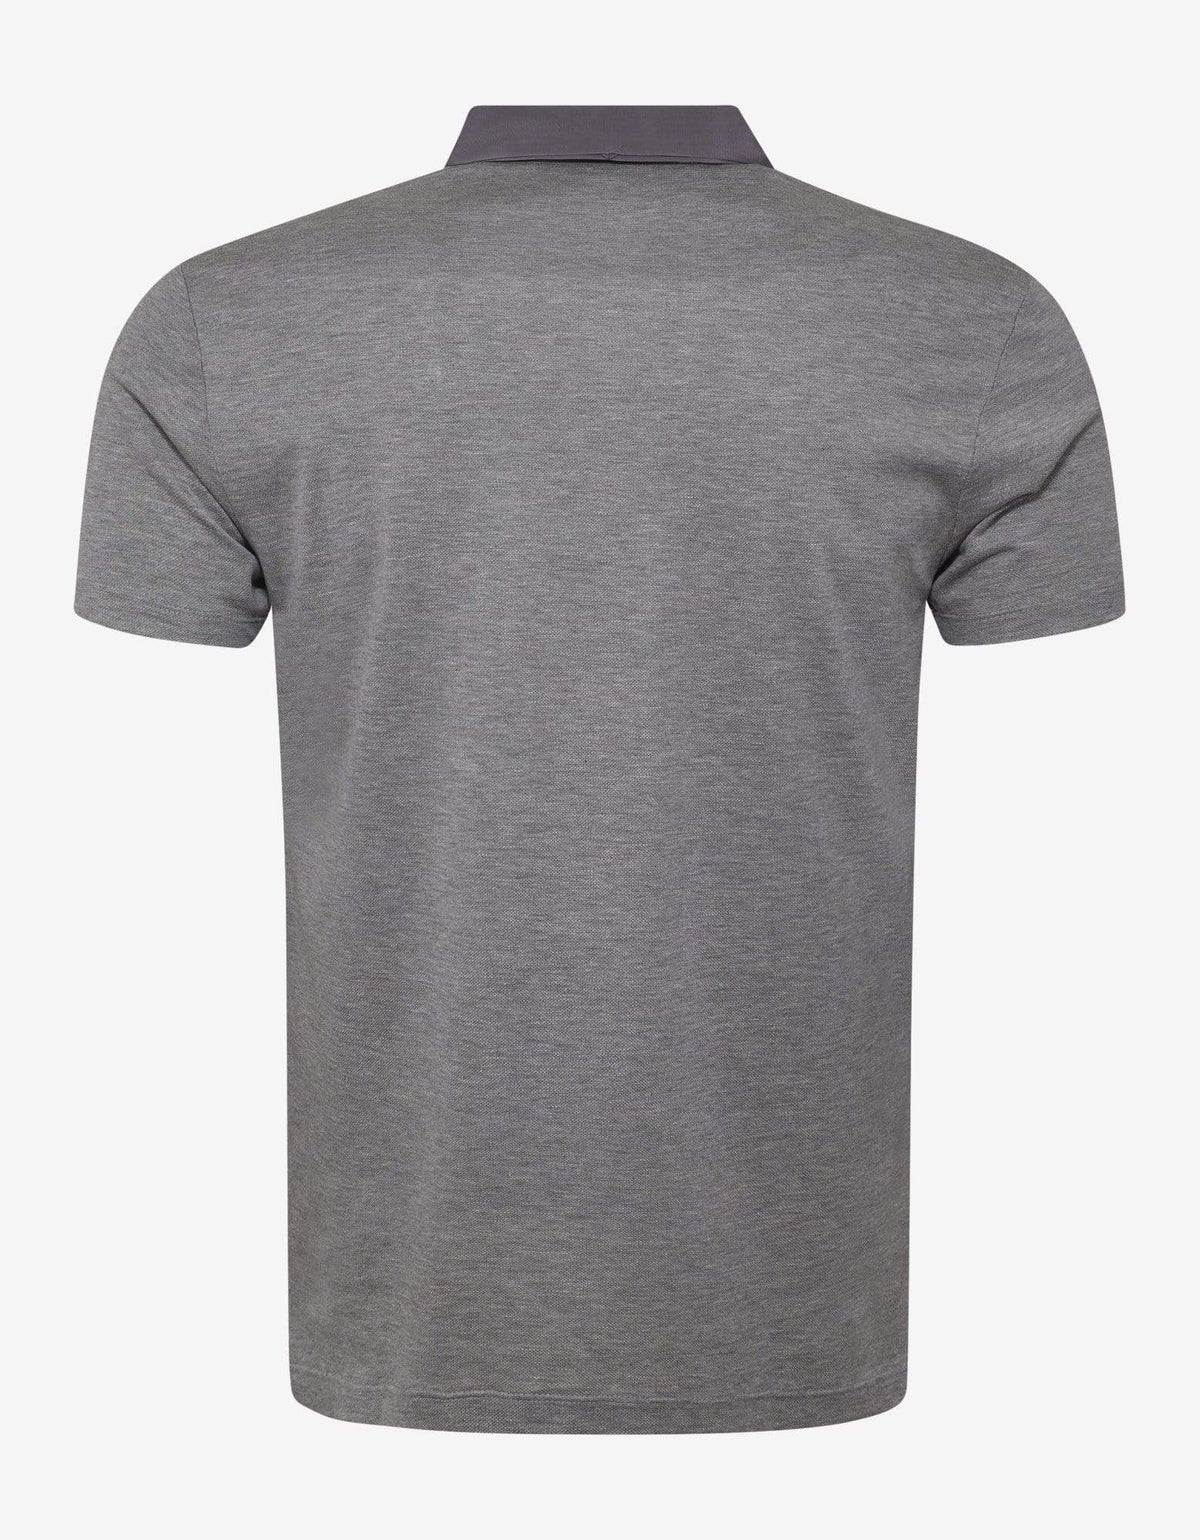 Lanvin Grey Grosgrain Collar Polo T-Shirt